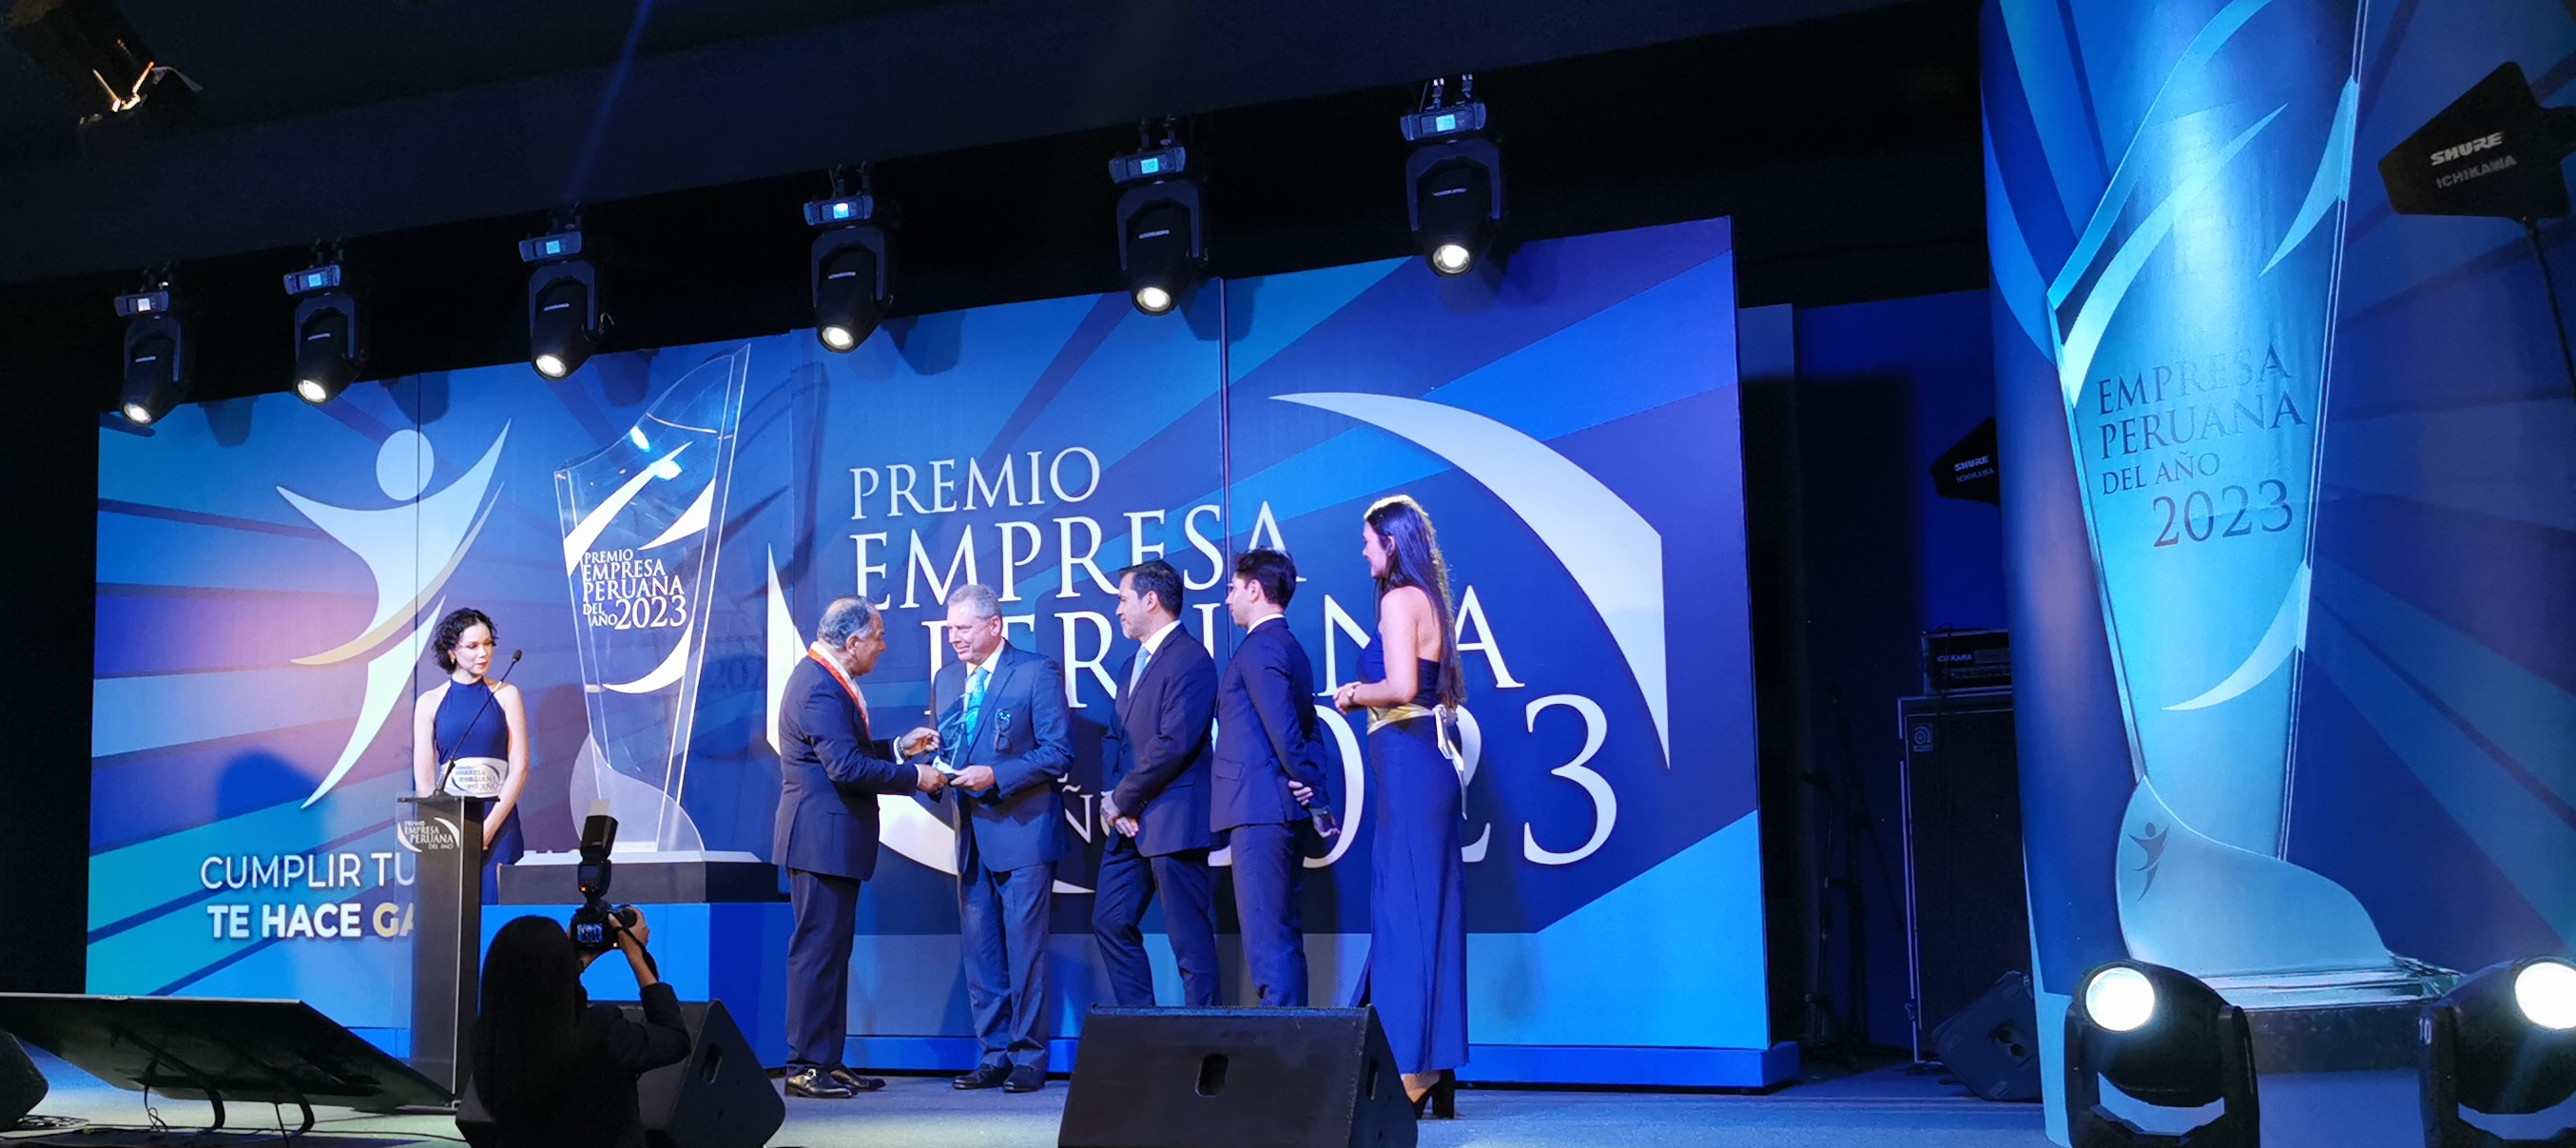 Metso distinguida en ”Premios Empresa Peruana del Año 2023”   